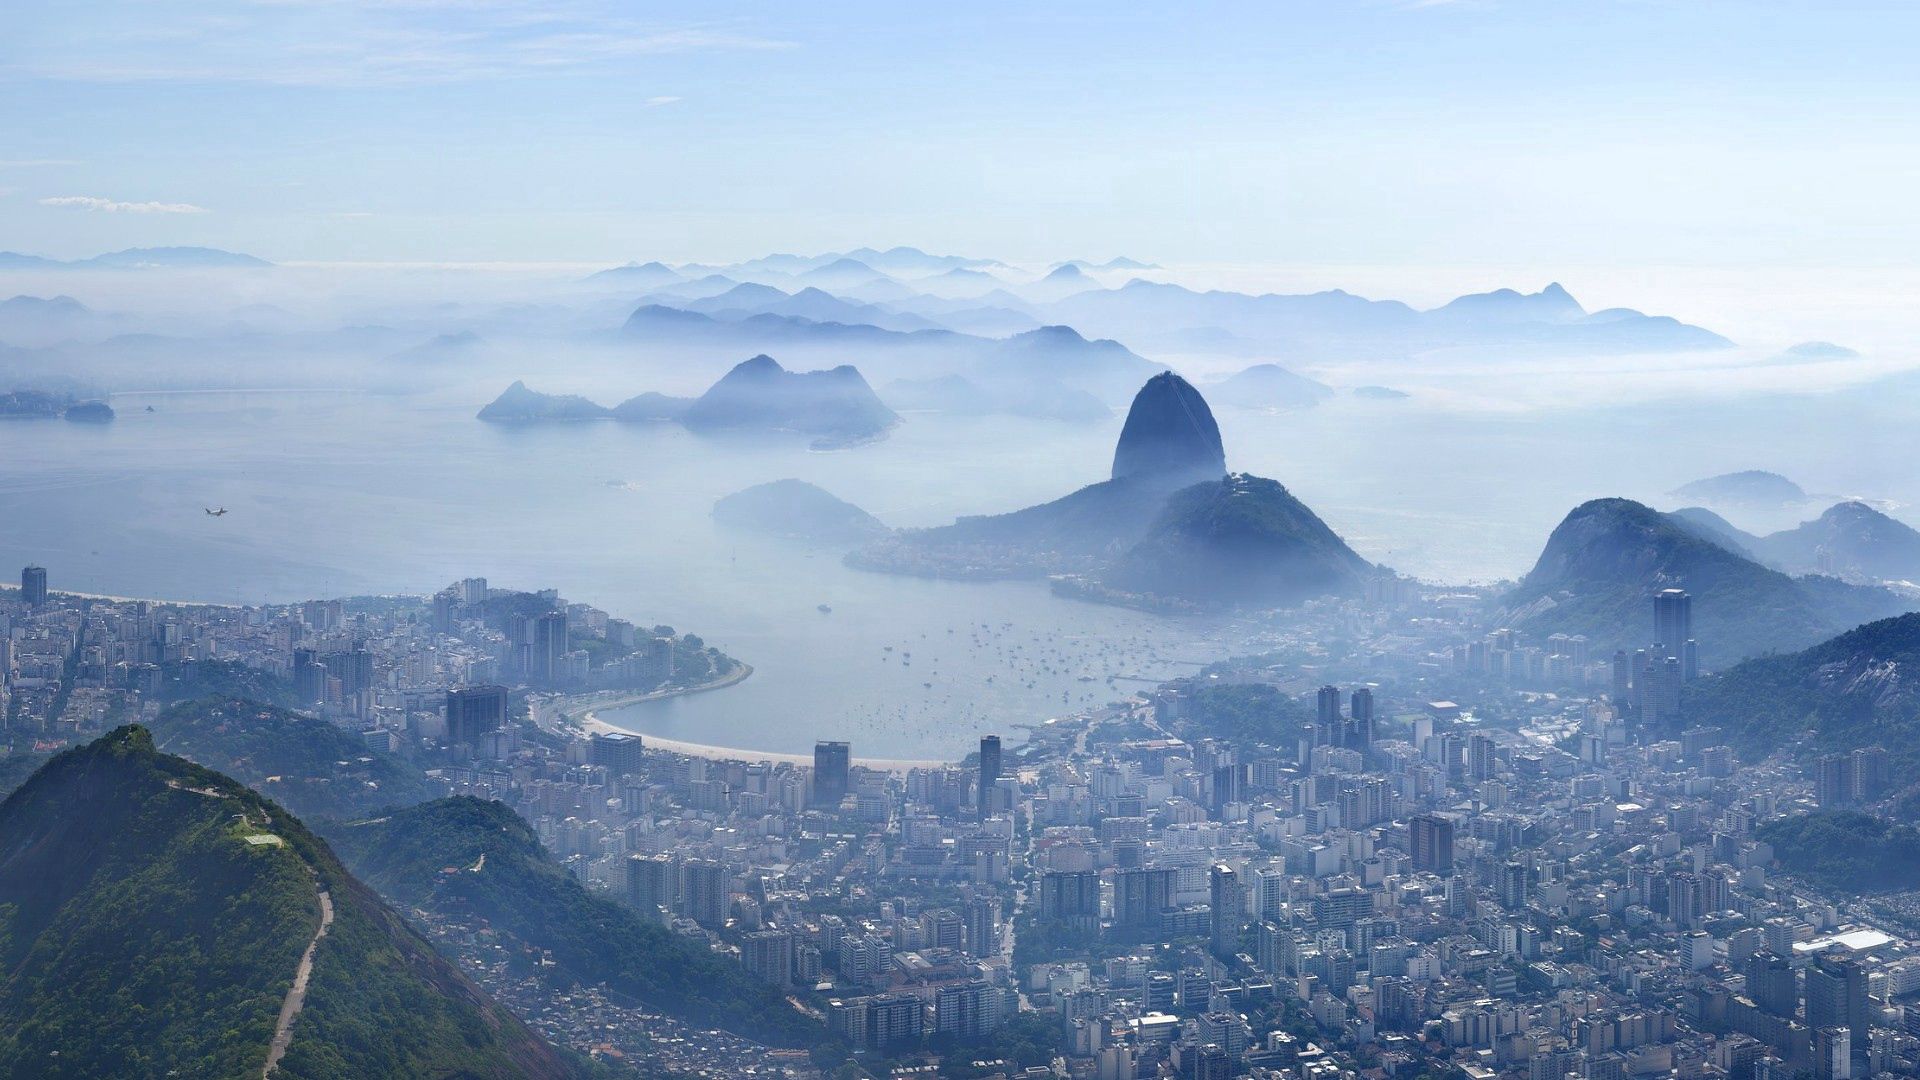 Скачать обои Рио Де Жанейро на телефон бесплатно